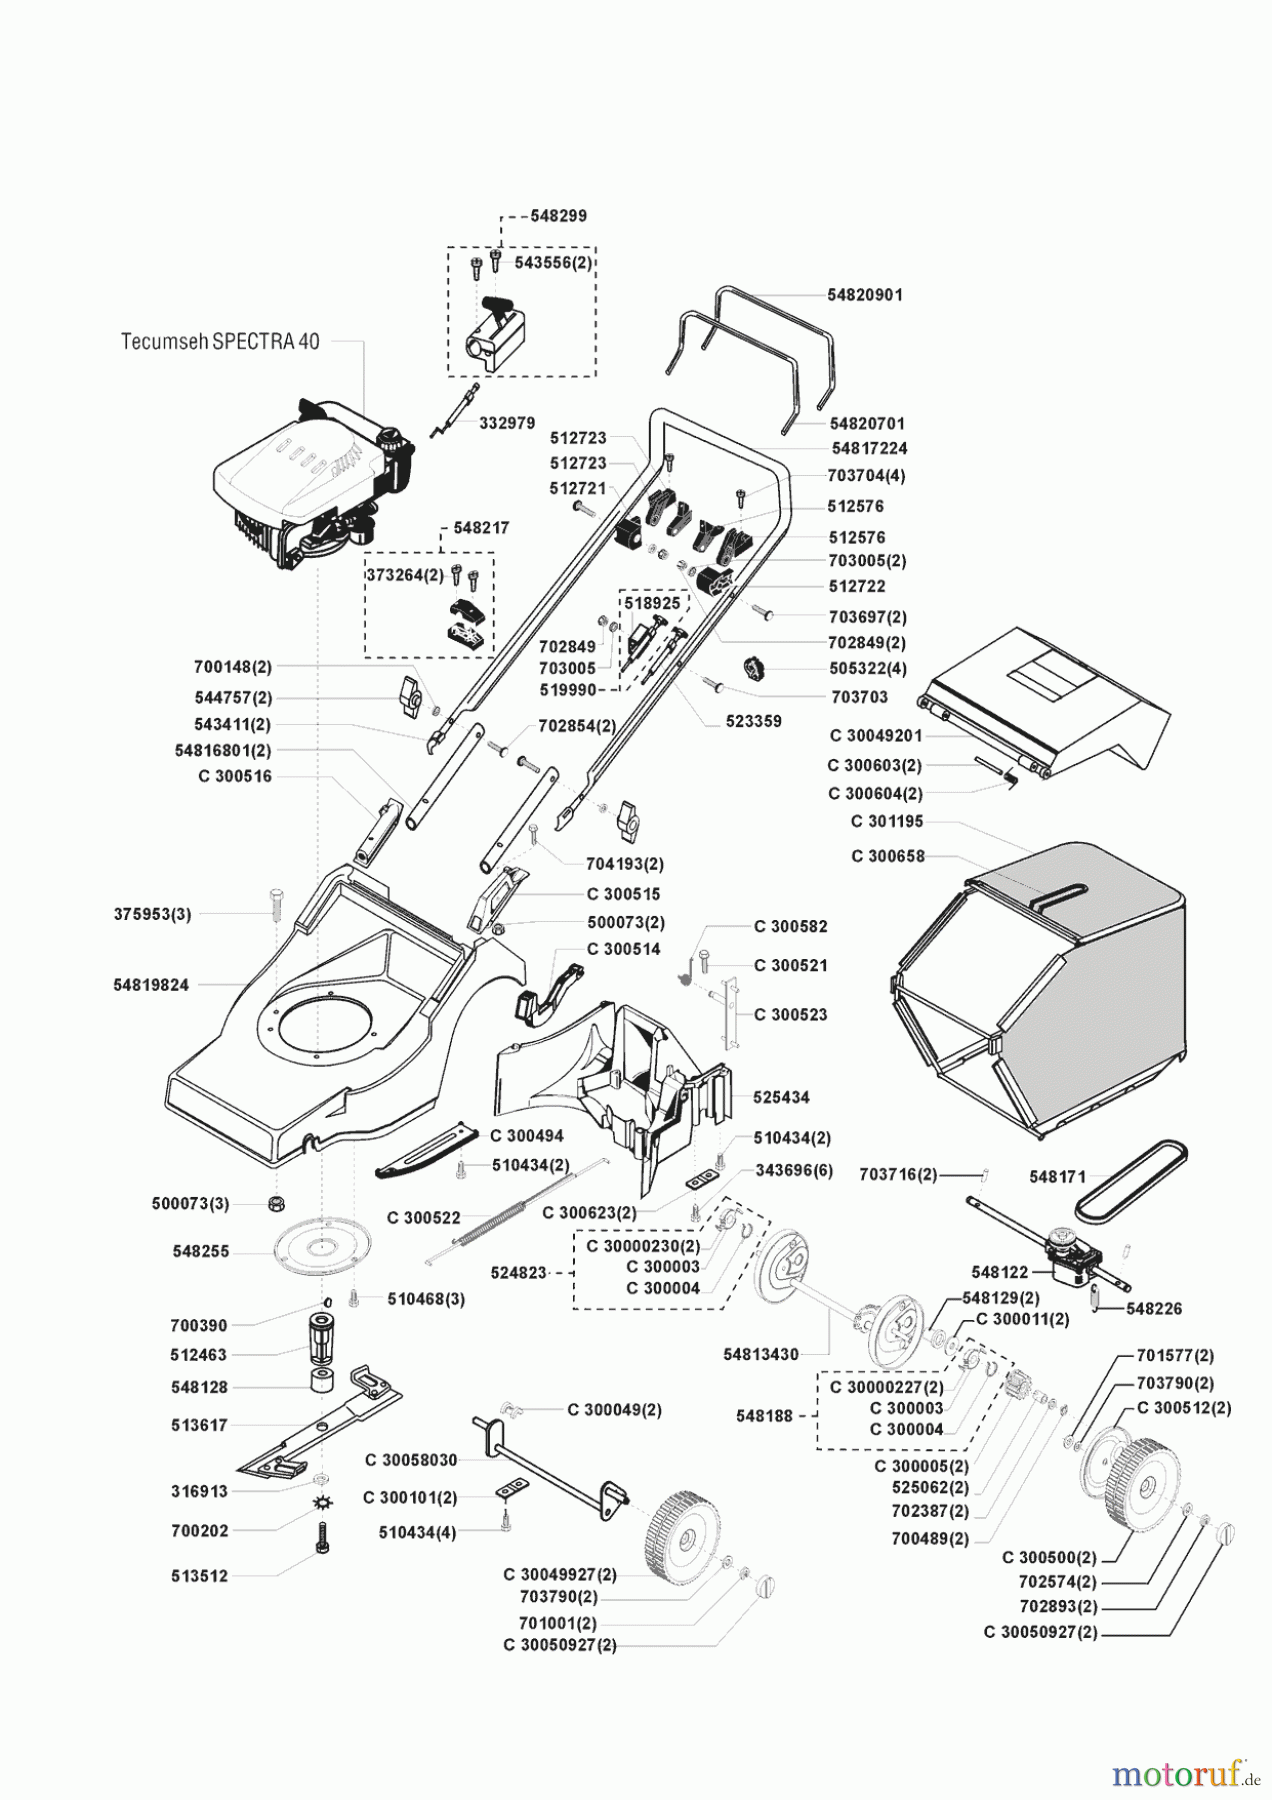  AL-KO Gartentechnik Benzinrasenmäher Apollo 40 AR Seite 1